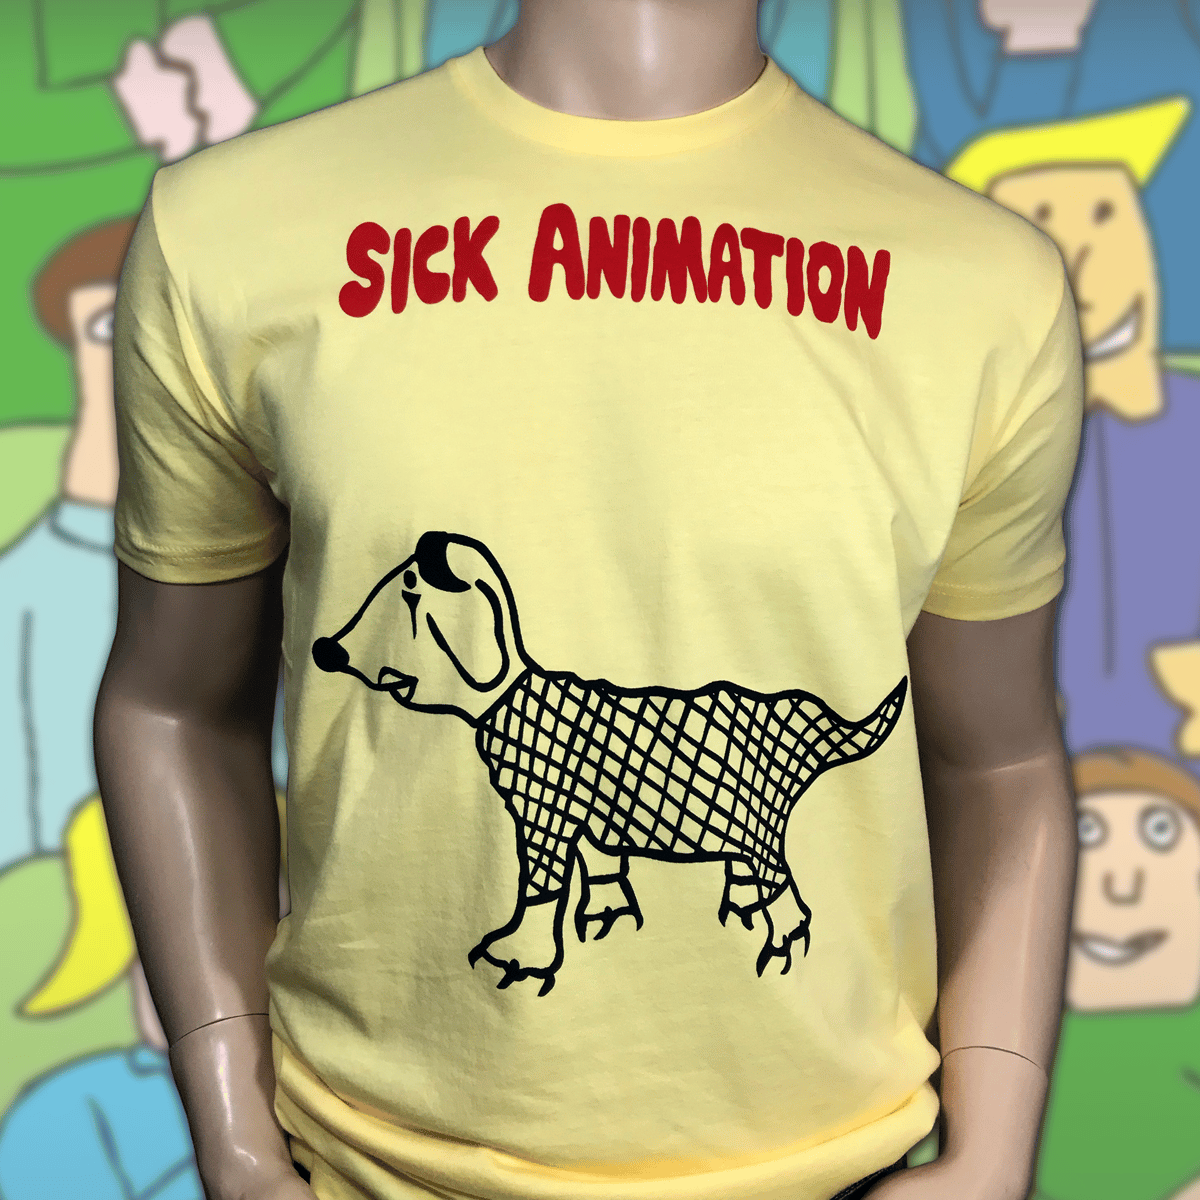 Isaac jul modul Goth Dog shirt - Sick Animation Shop